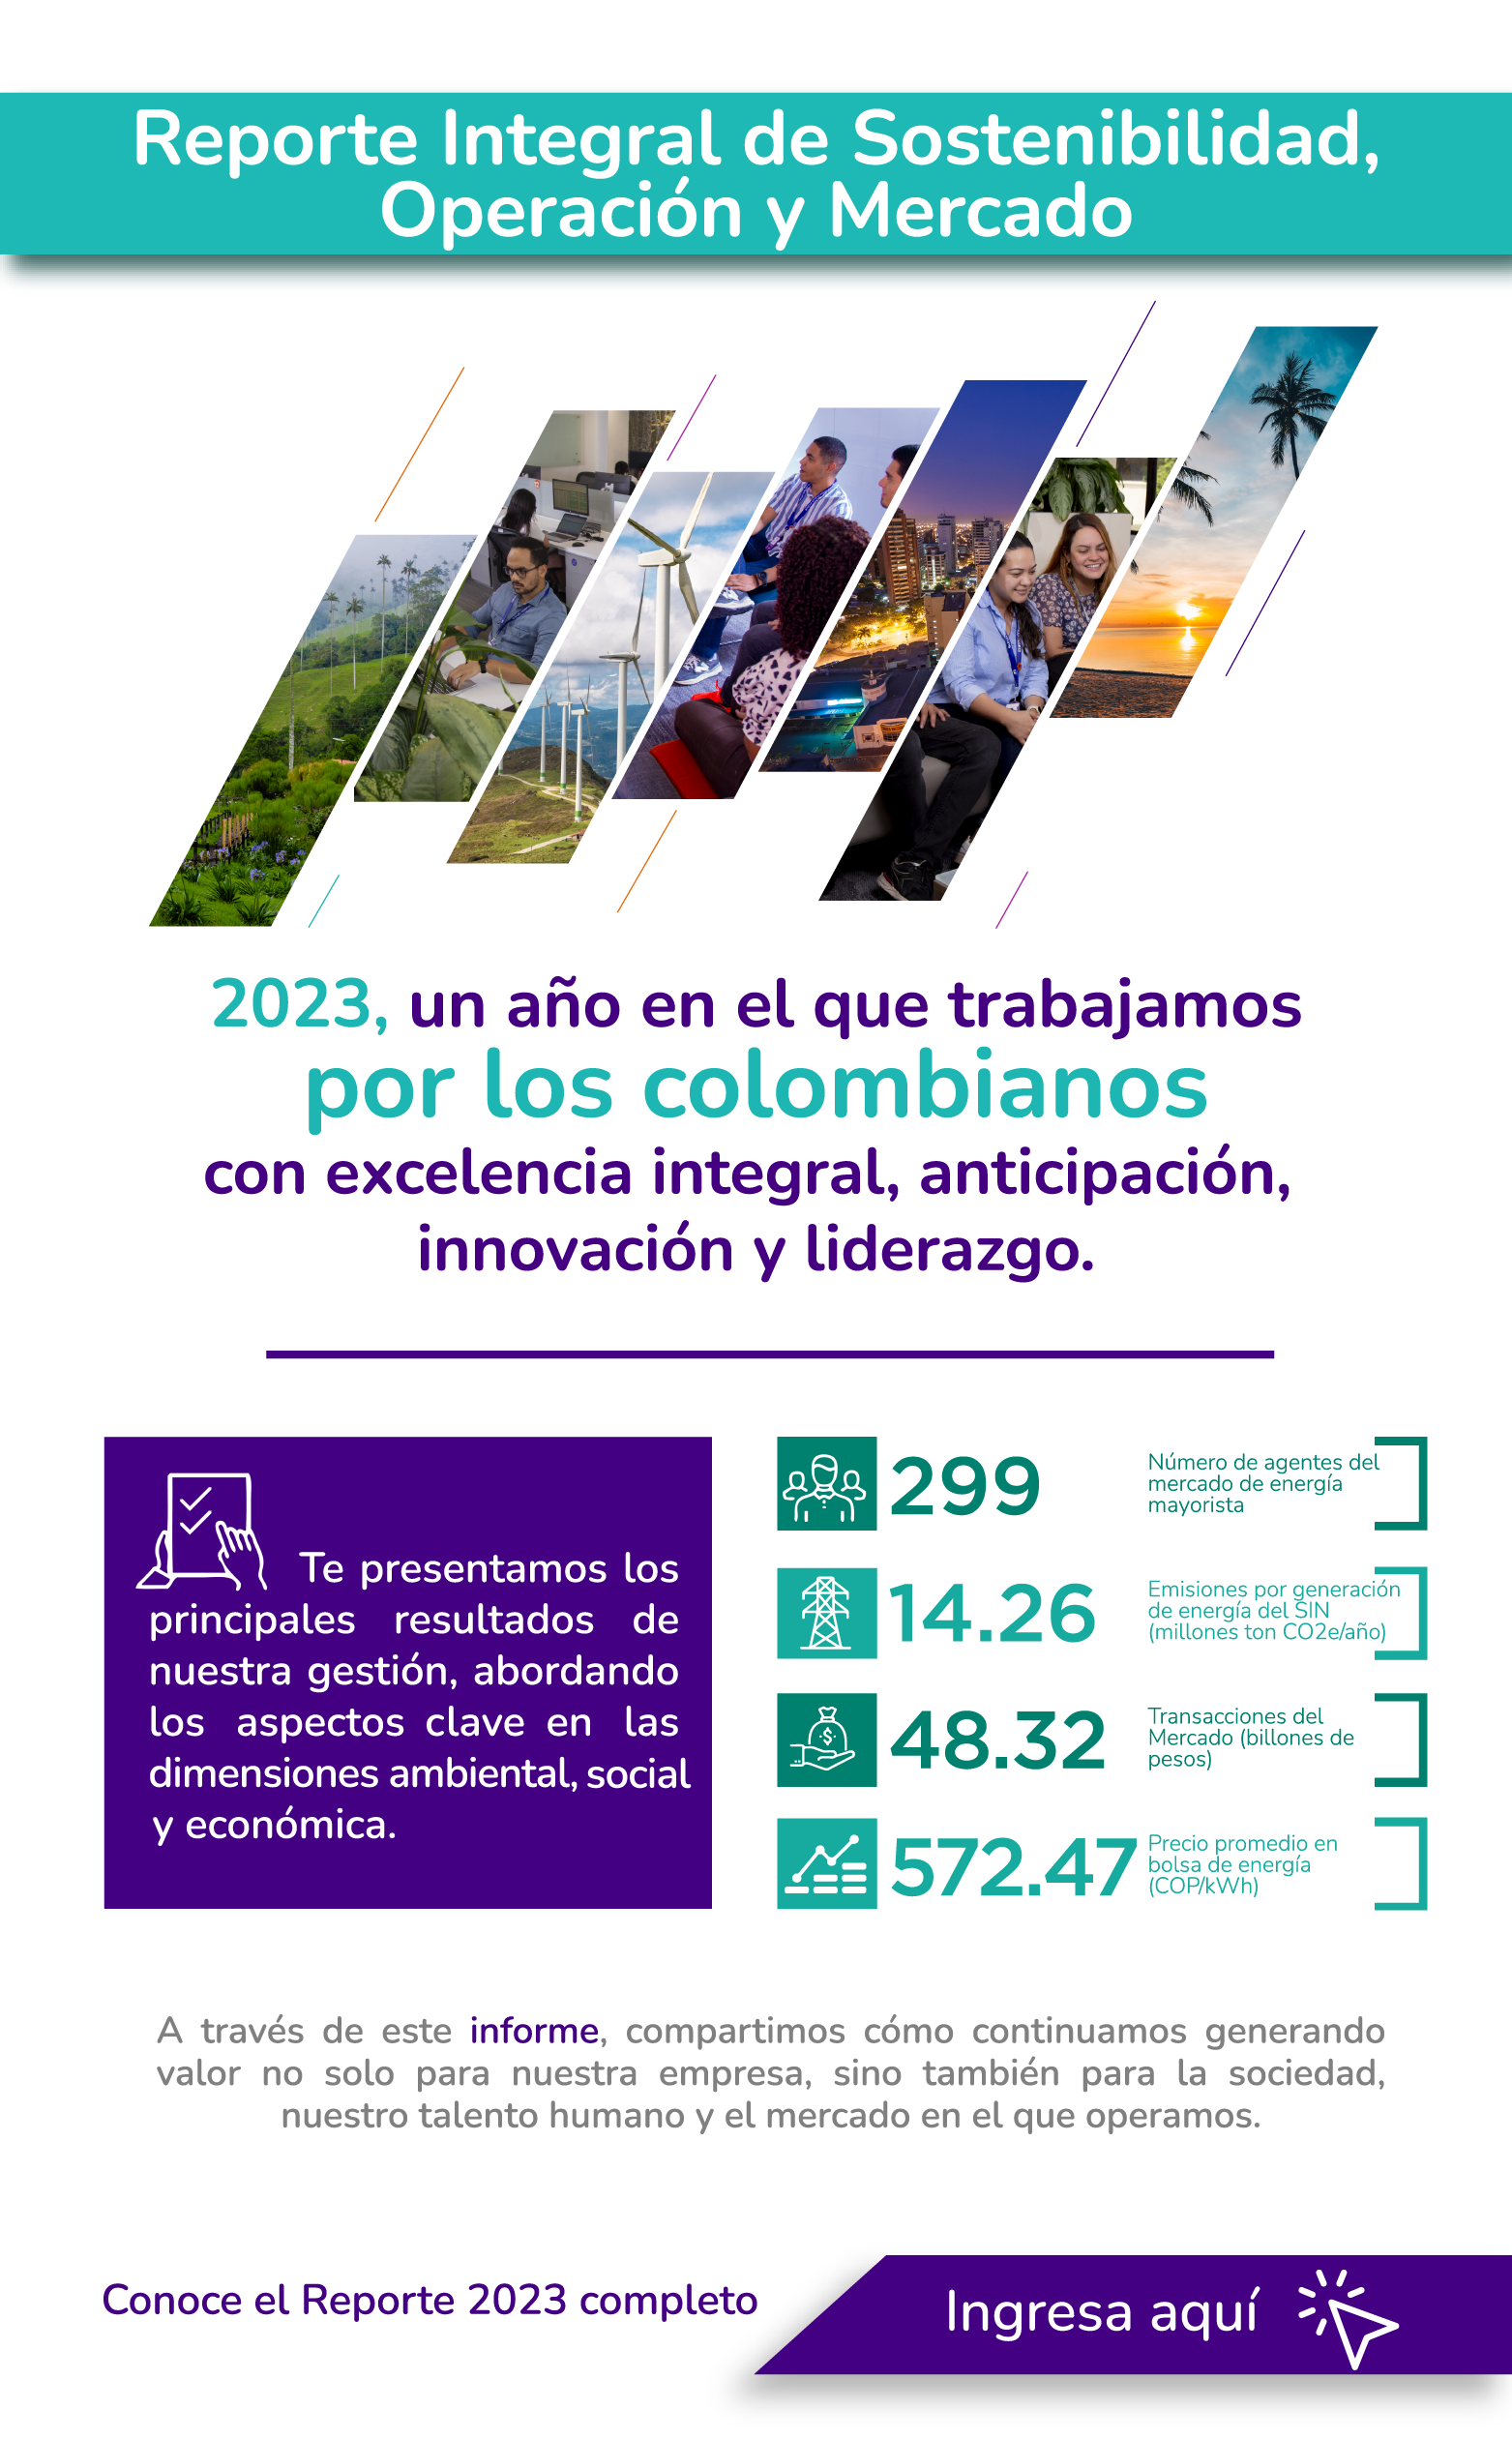 Reporte Integral de Sostenibilidad, Operación y Mercado 2023